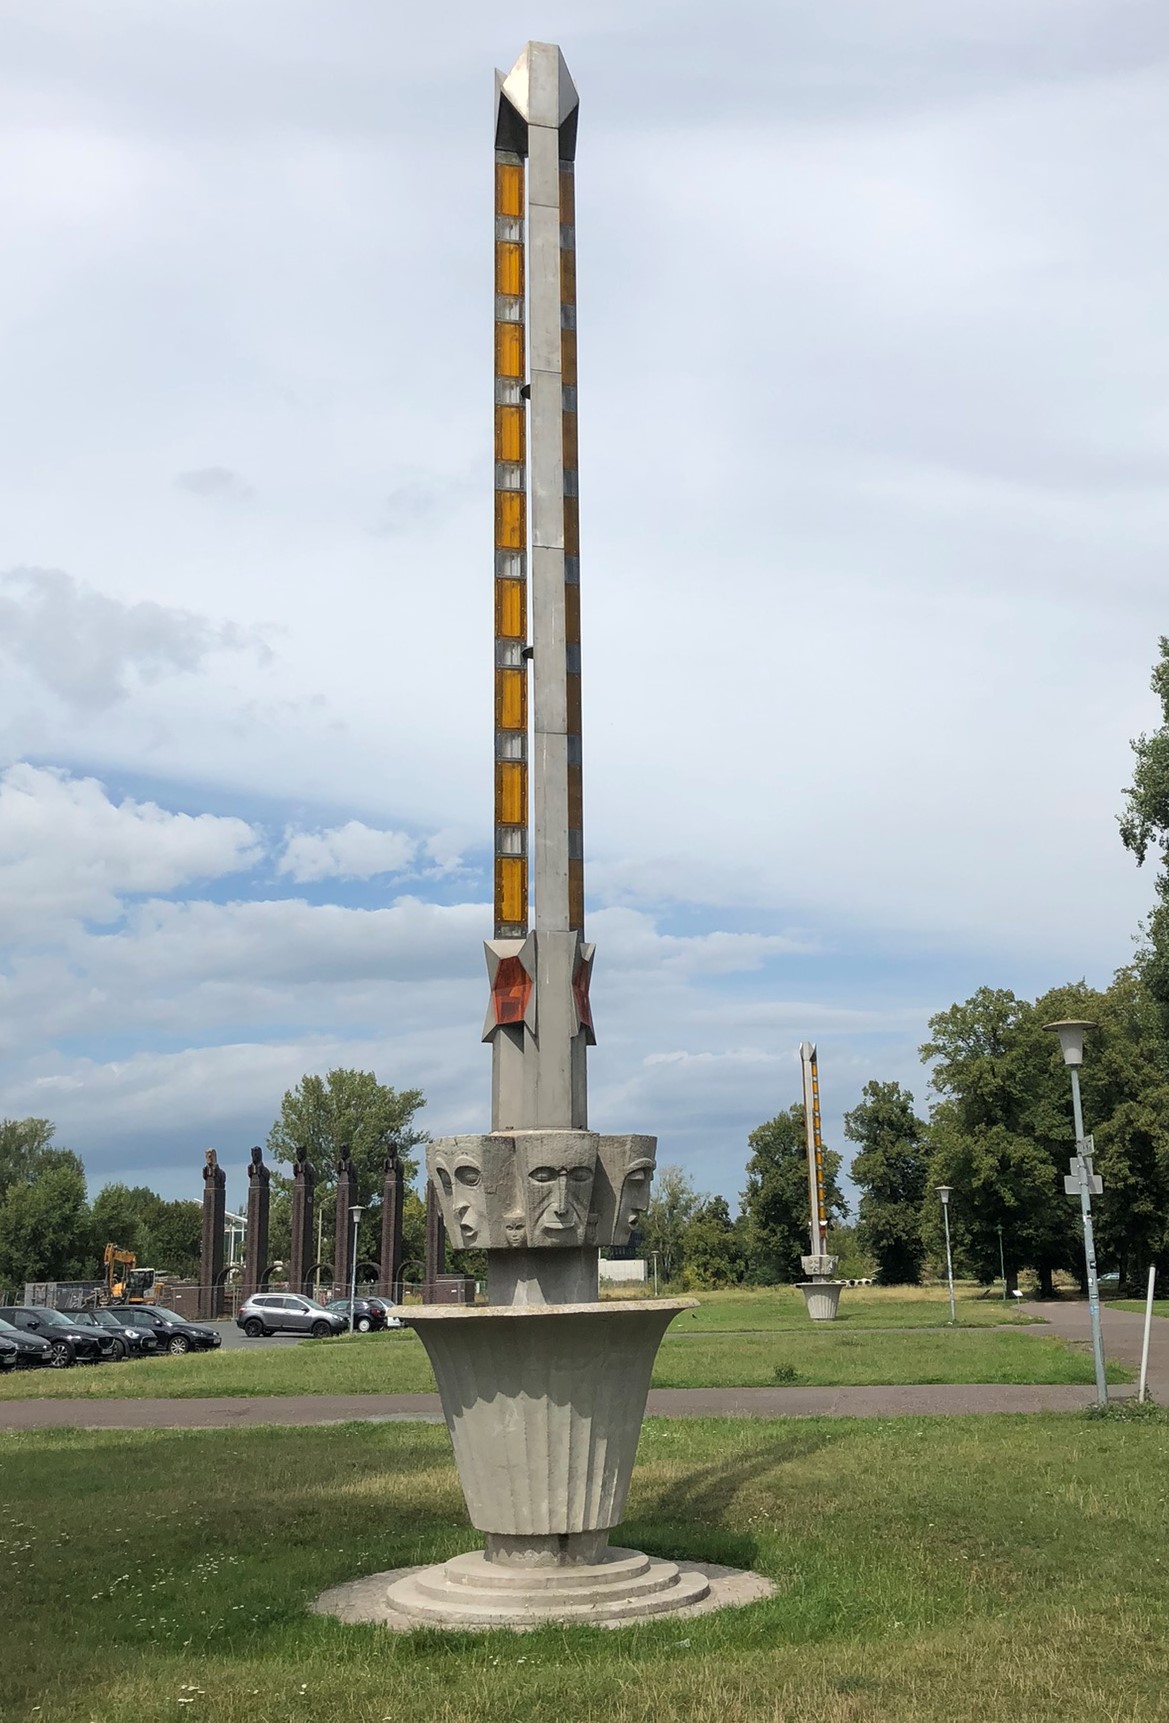 DDR-Lampensäulen vor dem Pferdetor neben der Stadthalle im Stadtpark Rotehorn